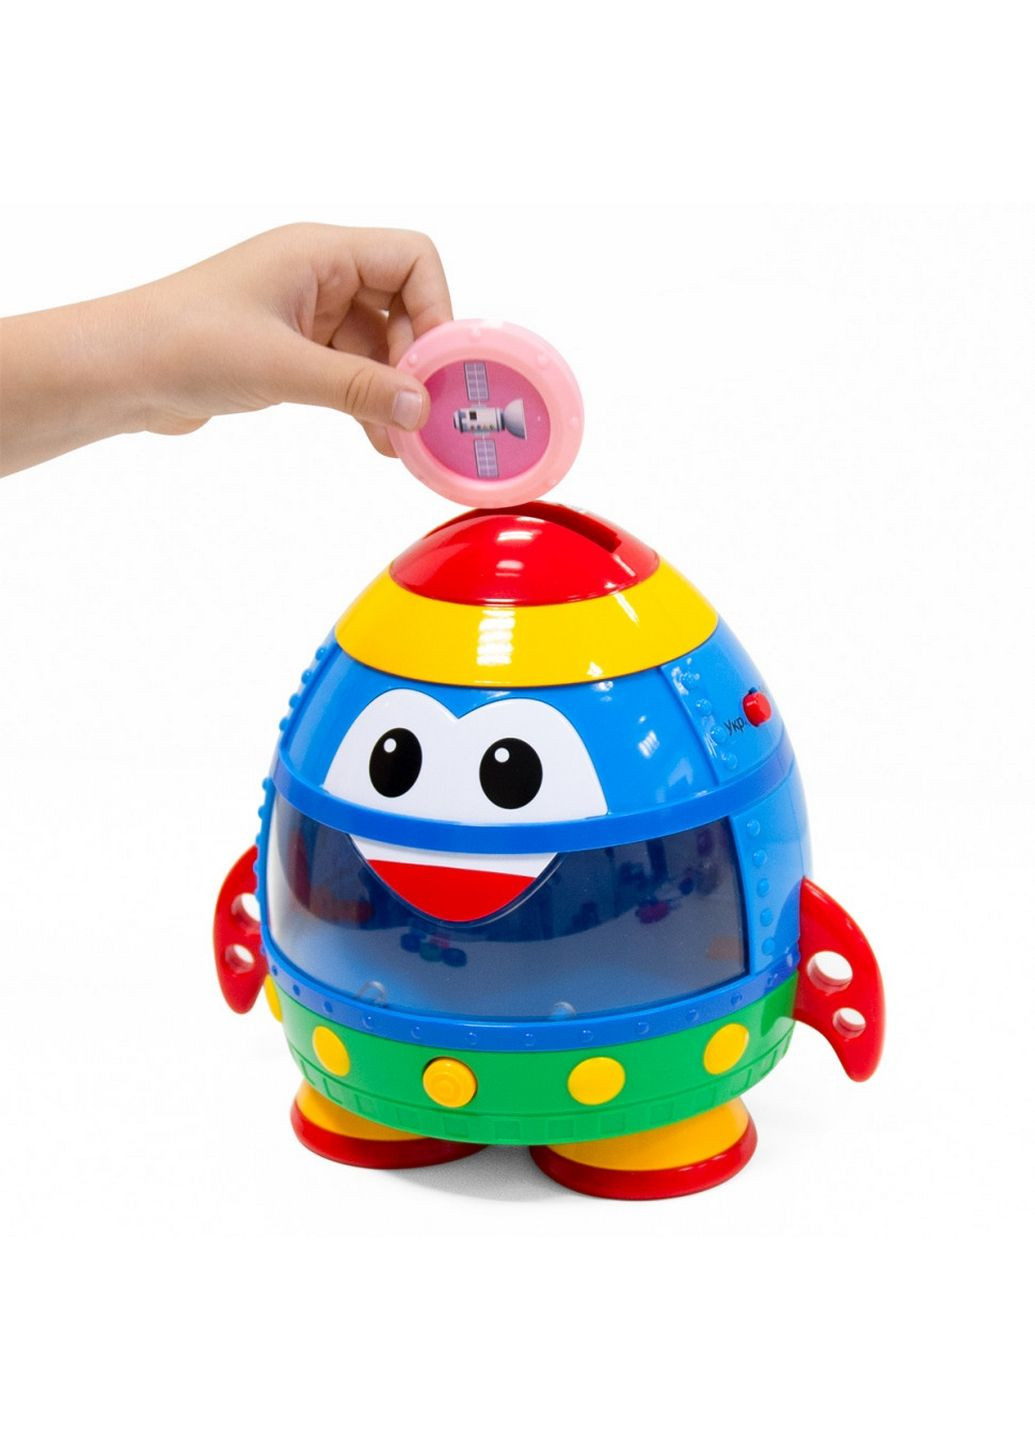 Интерактивная обучающая игрушка Smart-Звездолет украинский и английский 22,2х27,5х16,5 см KIDDI SMART (289365832)